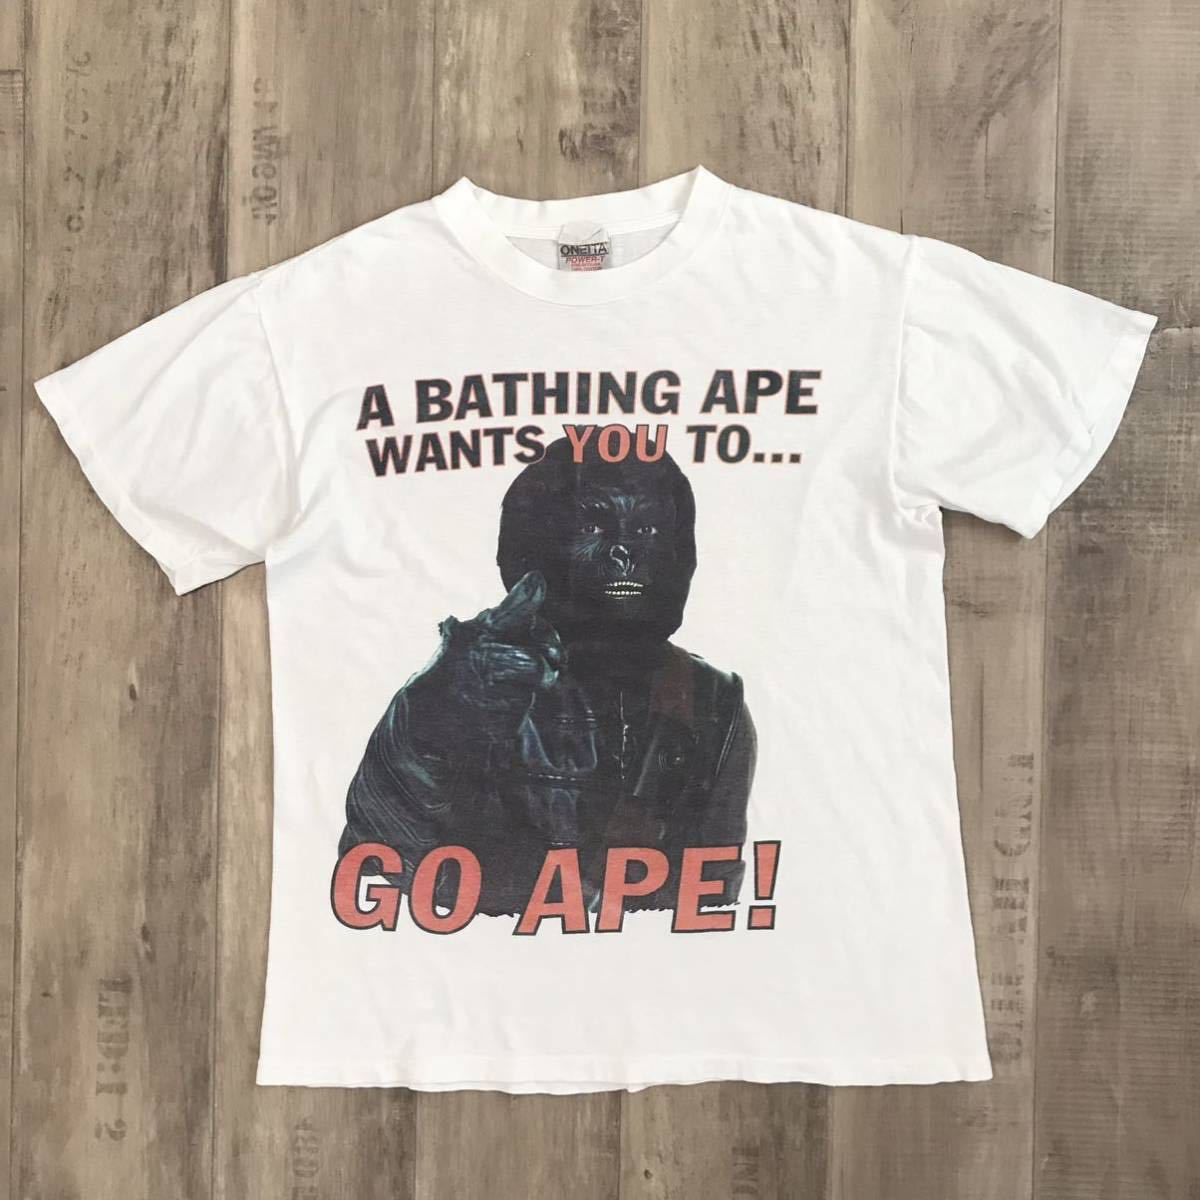 ★激レア★ 初期 猿の惑星 GO APE Tシャツ Mサイズ oneita a bathing ape BAPE 裏原宿 90s エイプ ベイプ nigo vintage nowhere d82